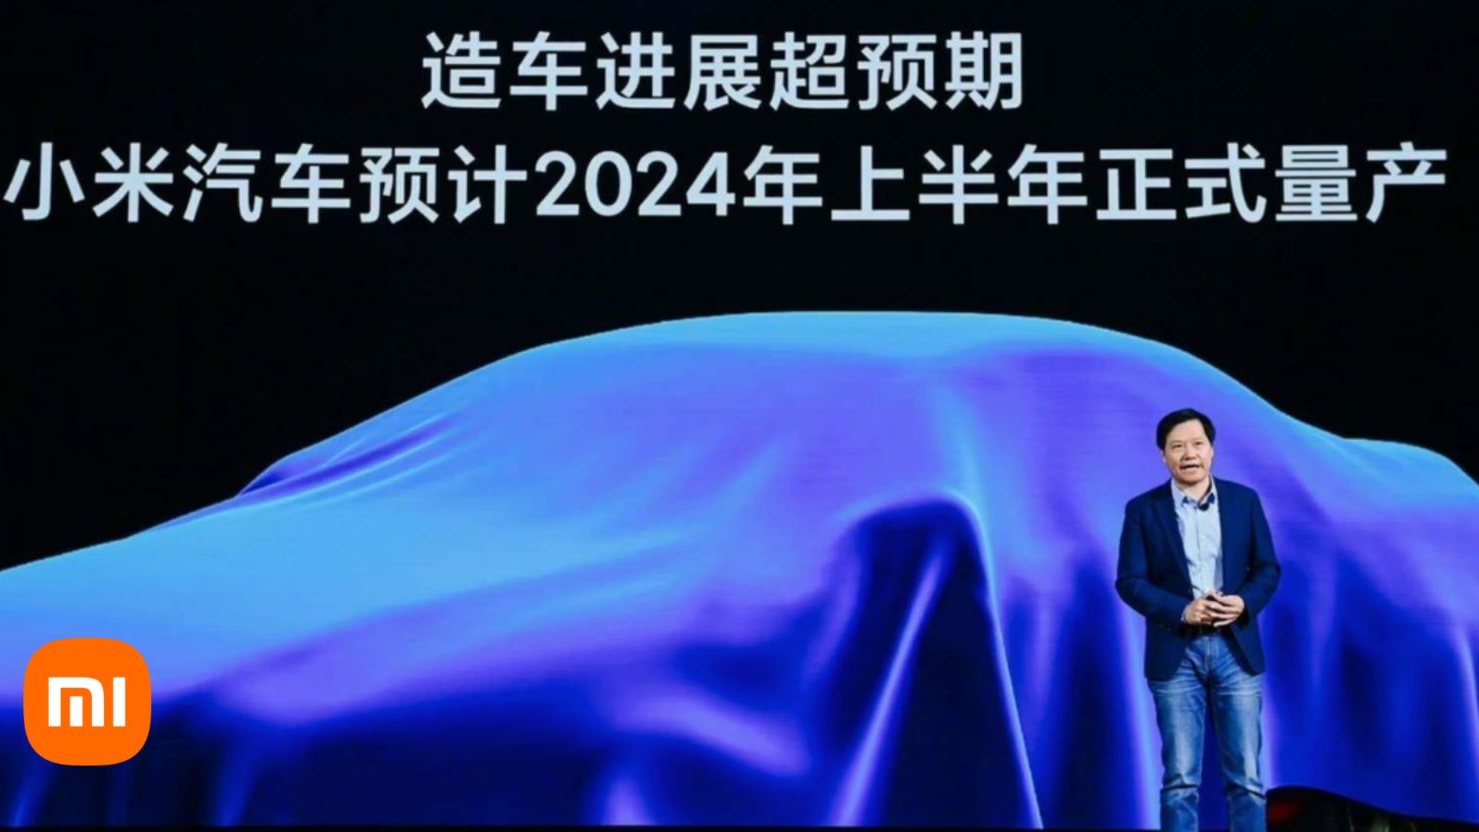 Desde 2013 que Lei Jun alimenta o interesse de conduzir a Xiaomi para a indústria de veículos eléctricos. O arranque da produção em massa já tem data